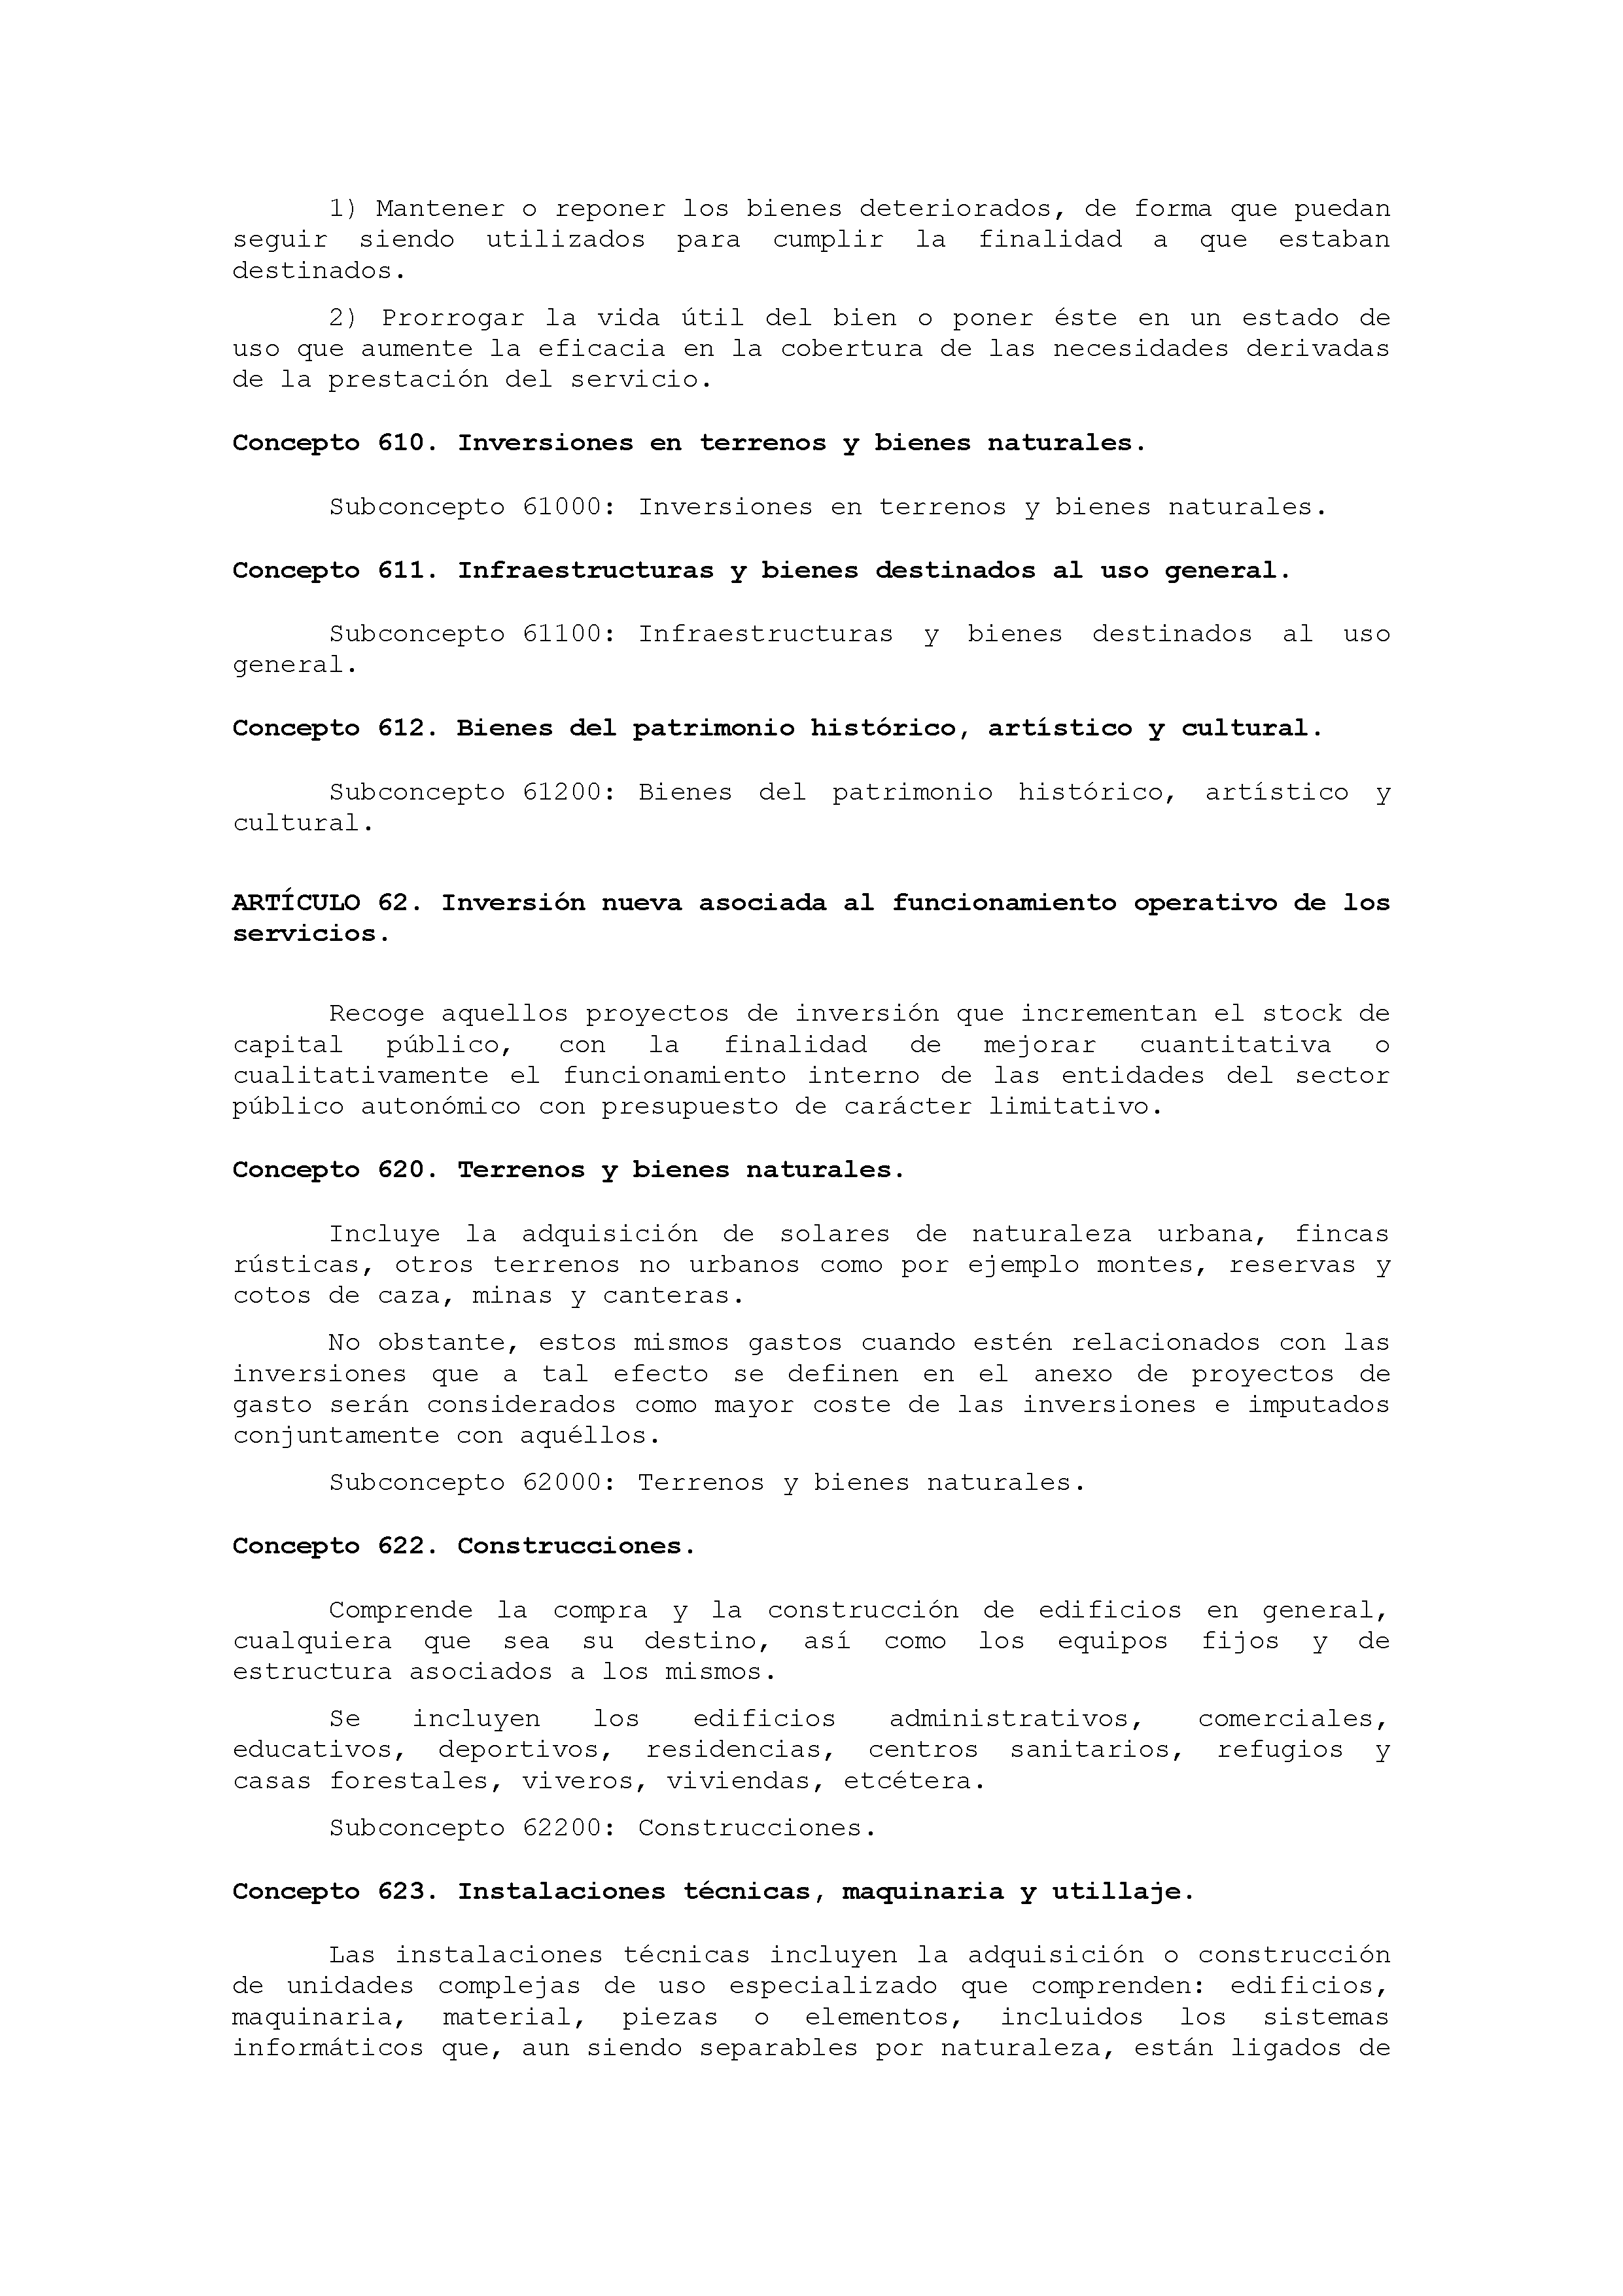 ANEXO IX CÓDIGO DE LA CLASIFICACIÓN ECONÓMICA DE LOS GASTOS PÚBLICOS Pag 36